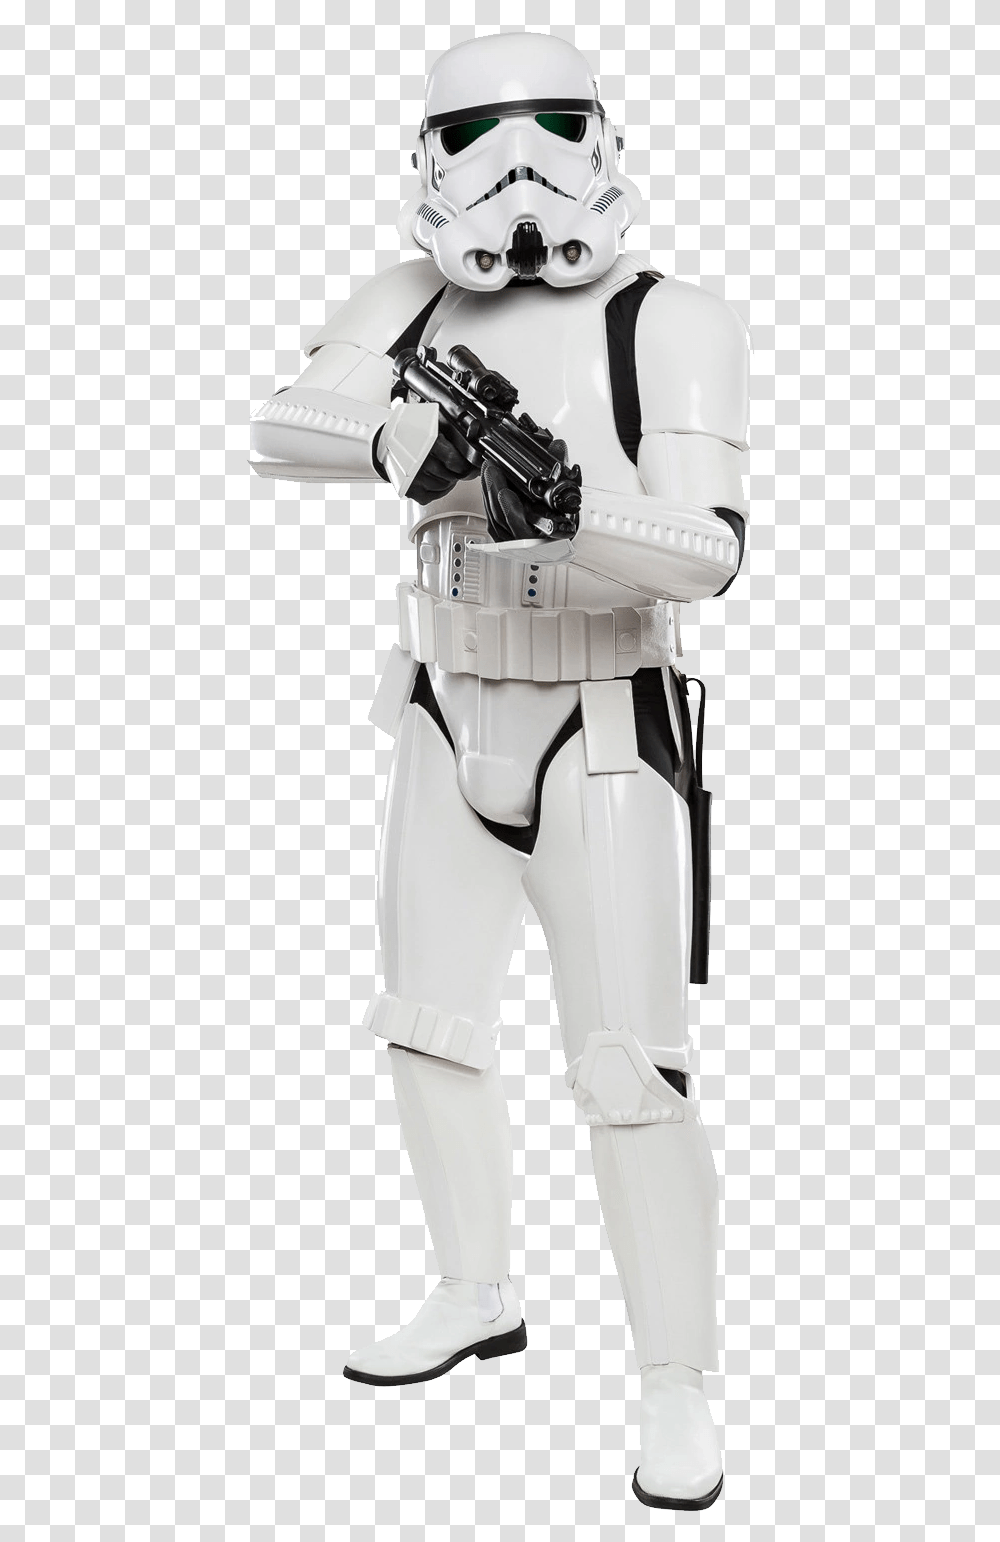 Download Stormtrooper Image For Free Star Wars Stormtrooper, Robot, Helmet, Clothing, Apparel Transparent Png